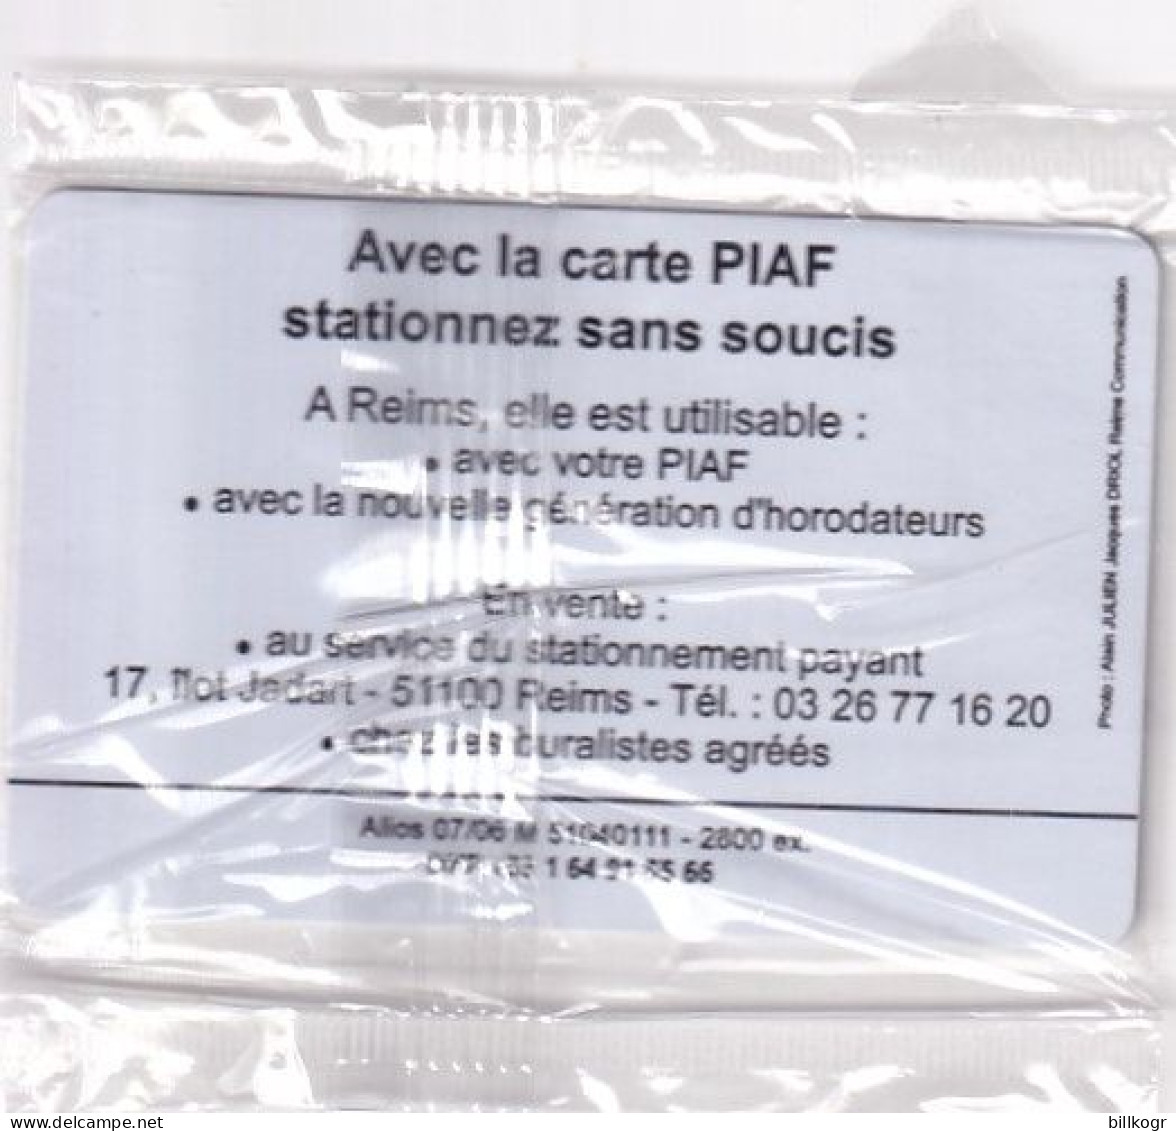 FRANCE - Le Piaf/Ville De Reims 75 Unites, Tirage 2800, 07/06, Mint - Cartes De Stationnement, PIAF